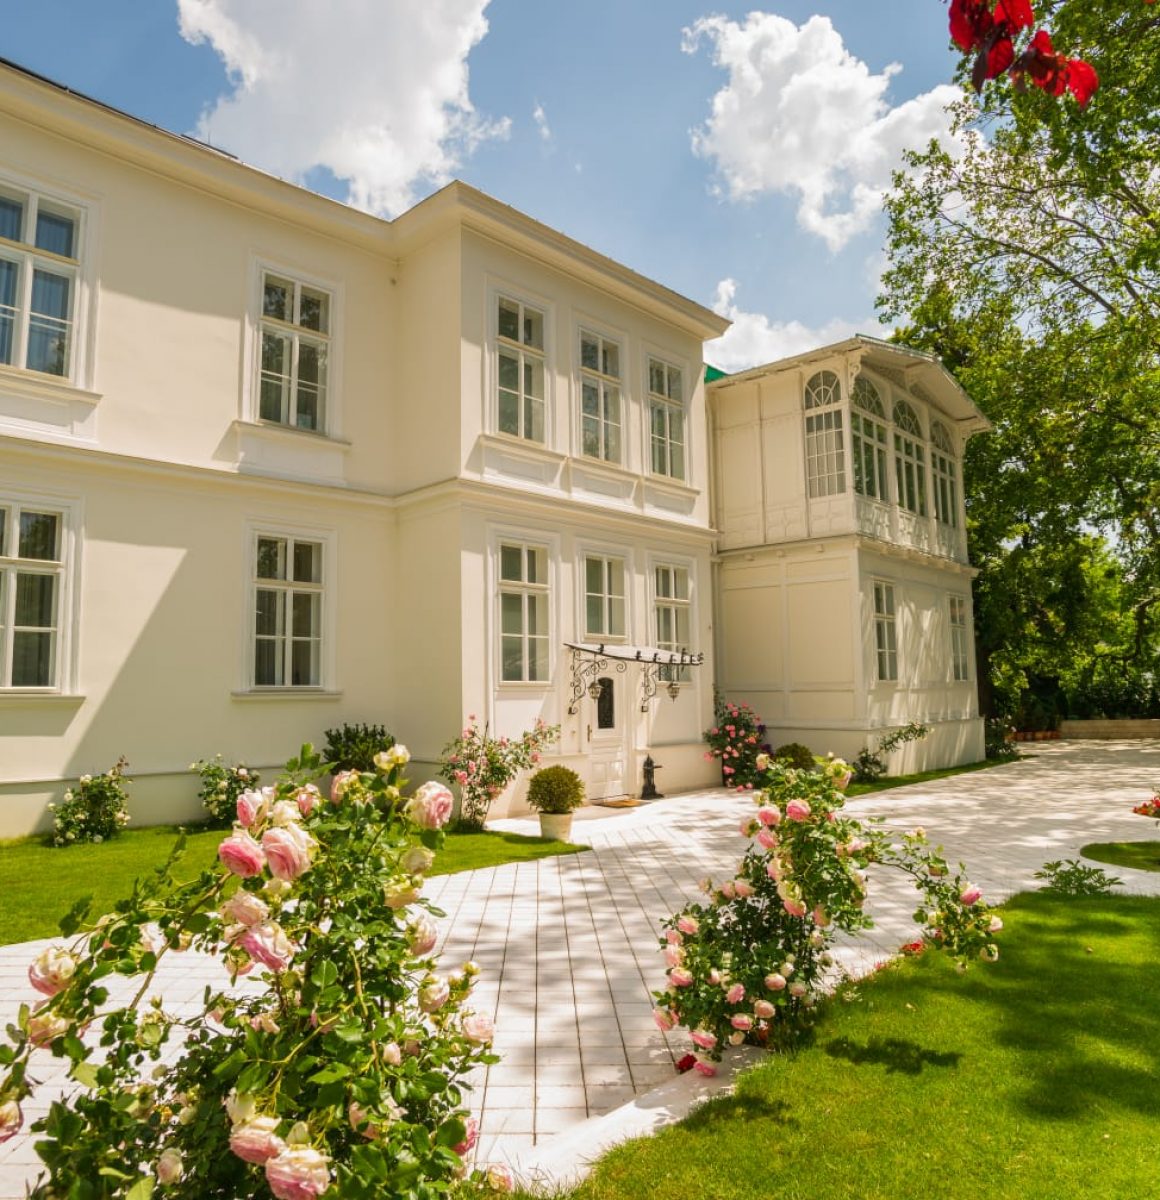 Portal Inmobiliario de Lujo en Baden bei Wien, presenta chalet de lujo venta en Austria, villa de alta gama para comprar y viviendas exclusivas en venta en Baden.